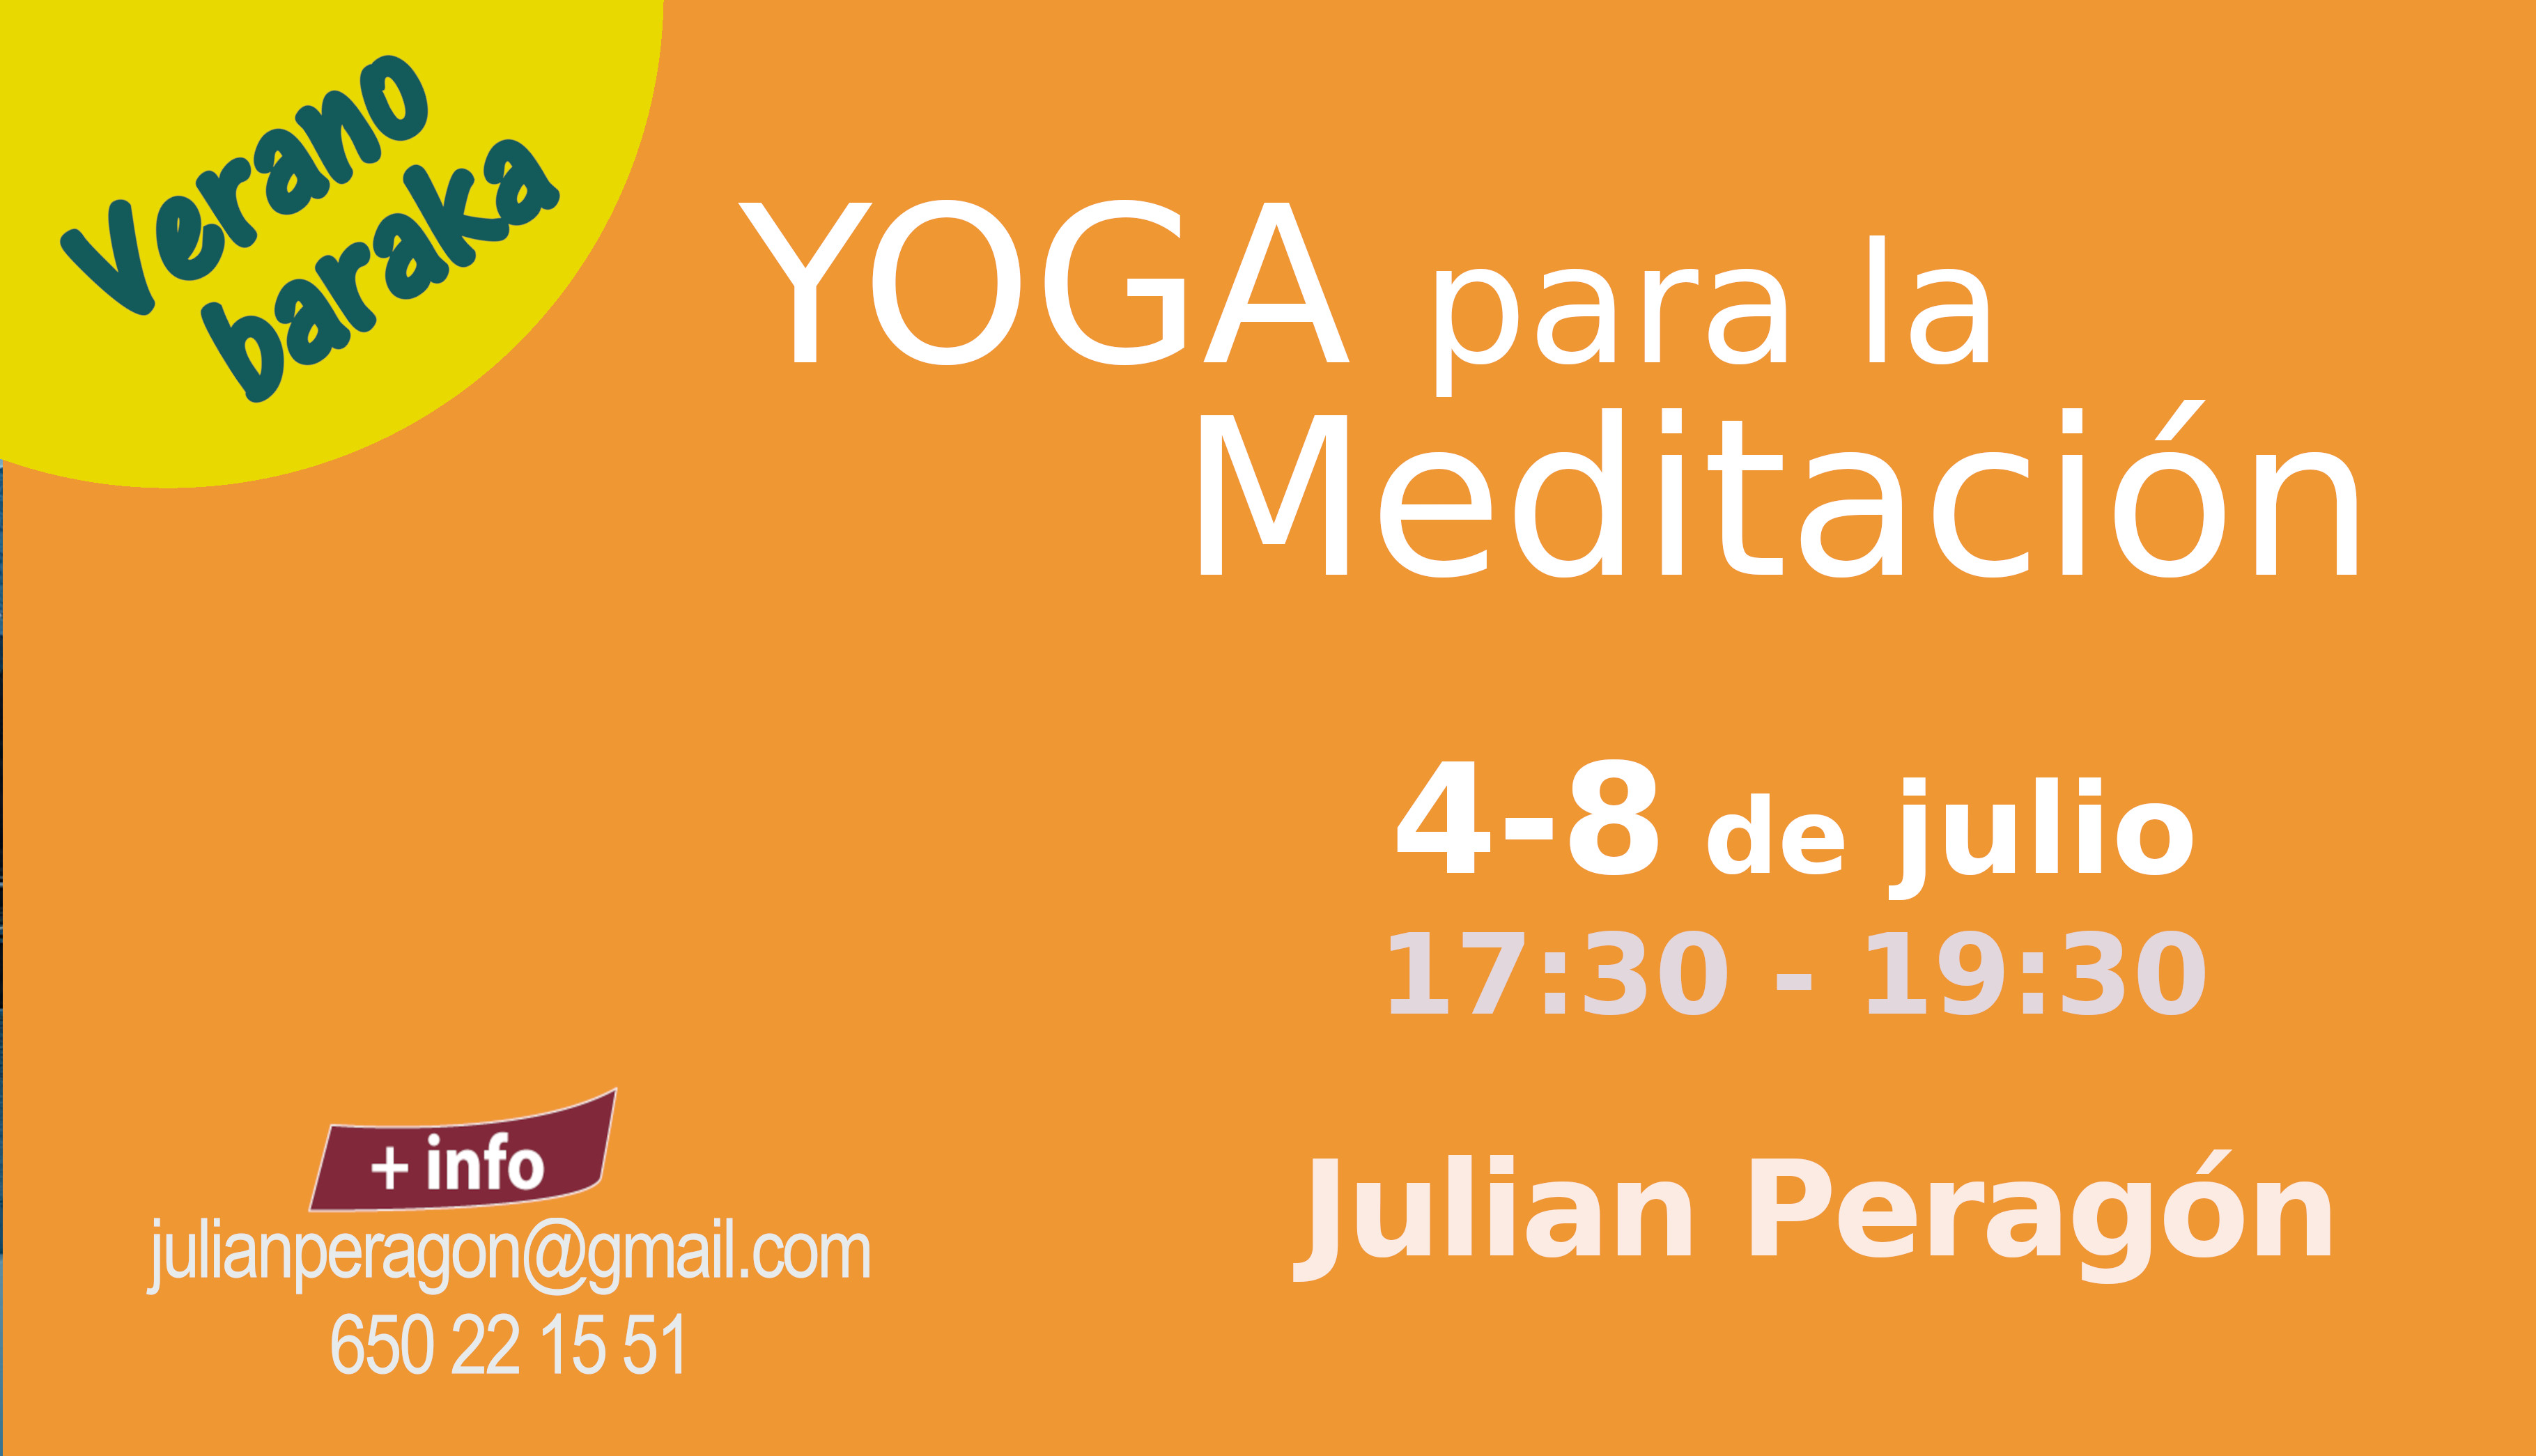 Yoga para la Meditación con Julián Peragón